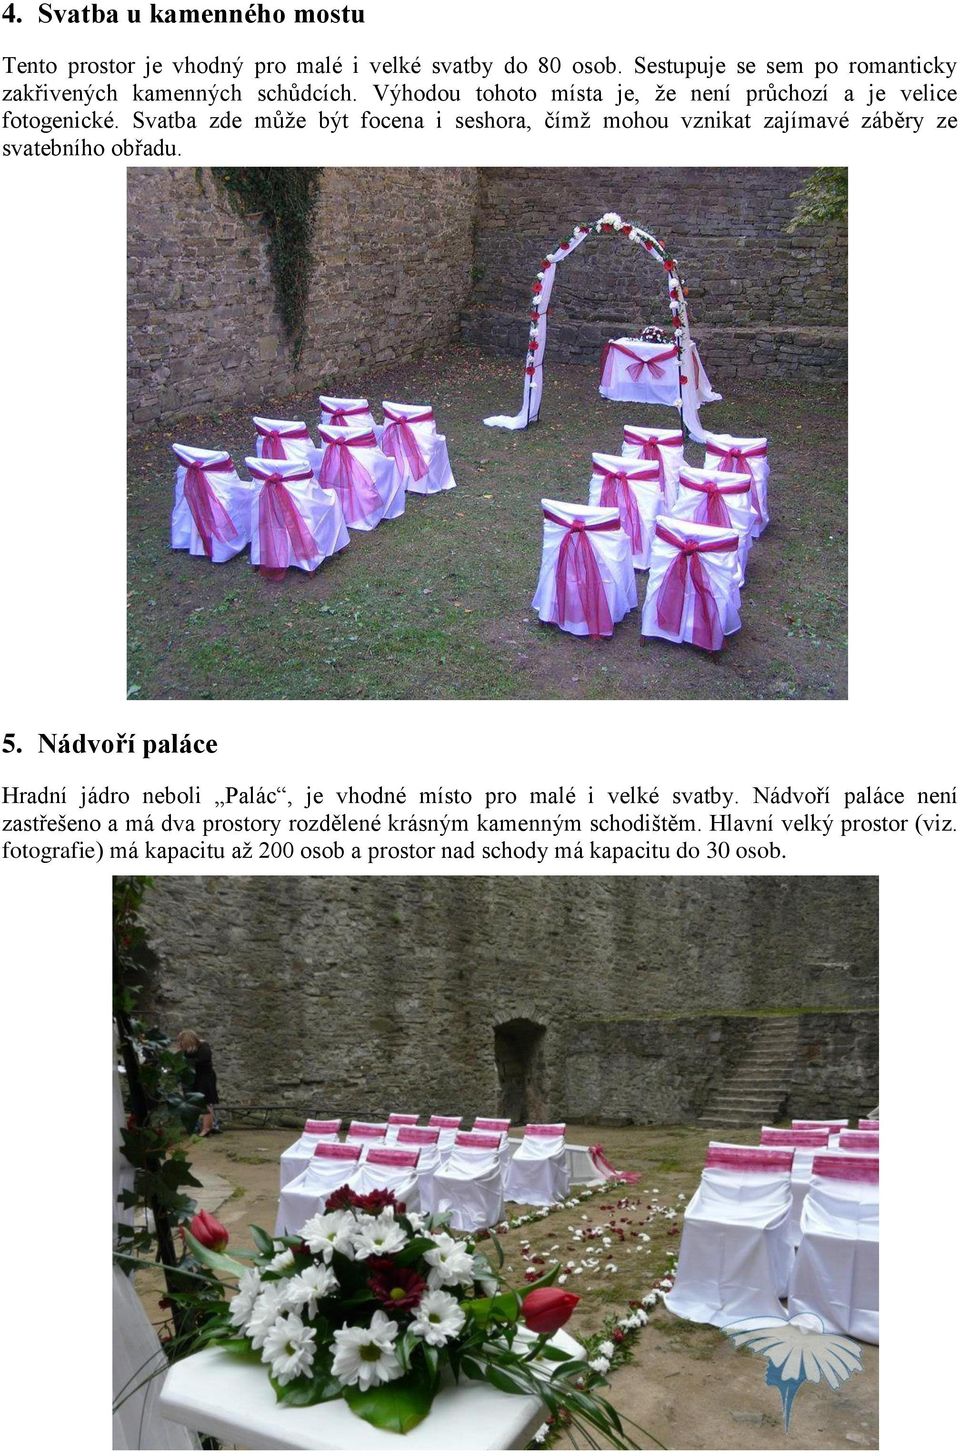 Svatba zde může být focena i seshora, čímž mohou vznikat zajímavé záběry ze svatebního obřadu. 5.